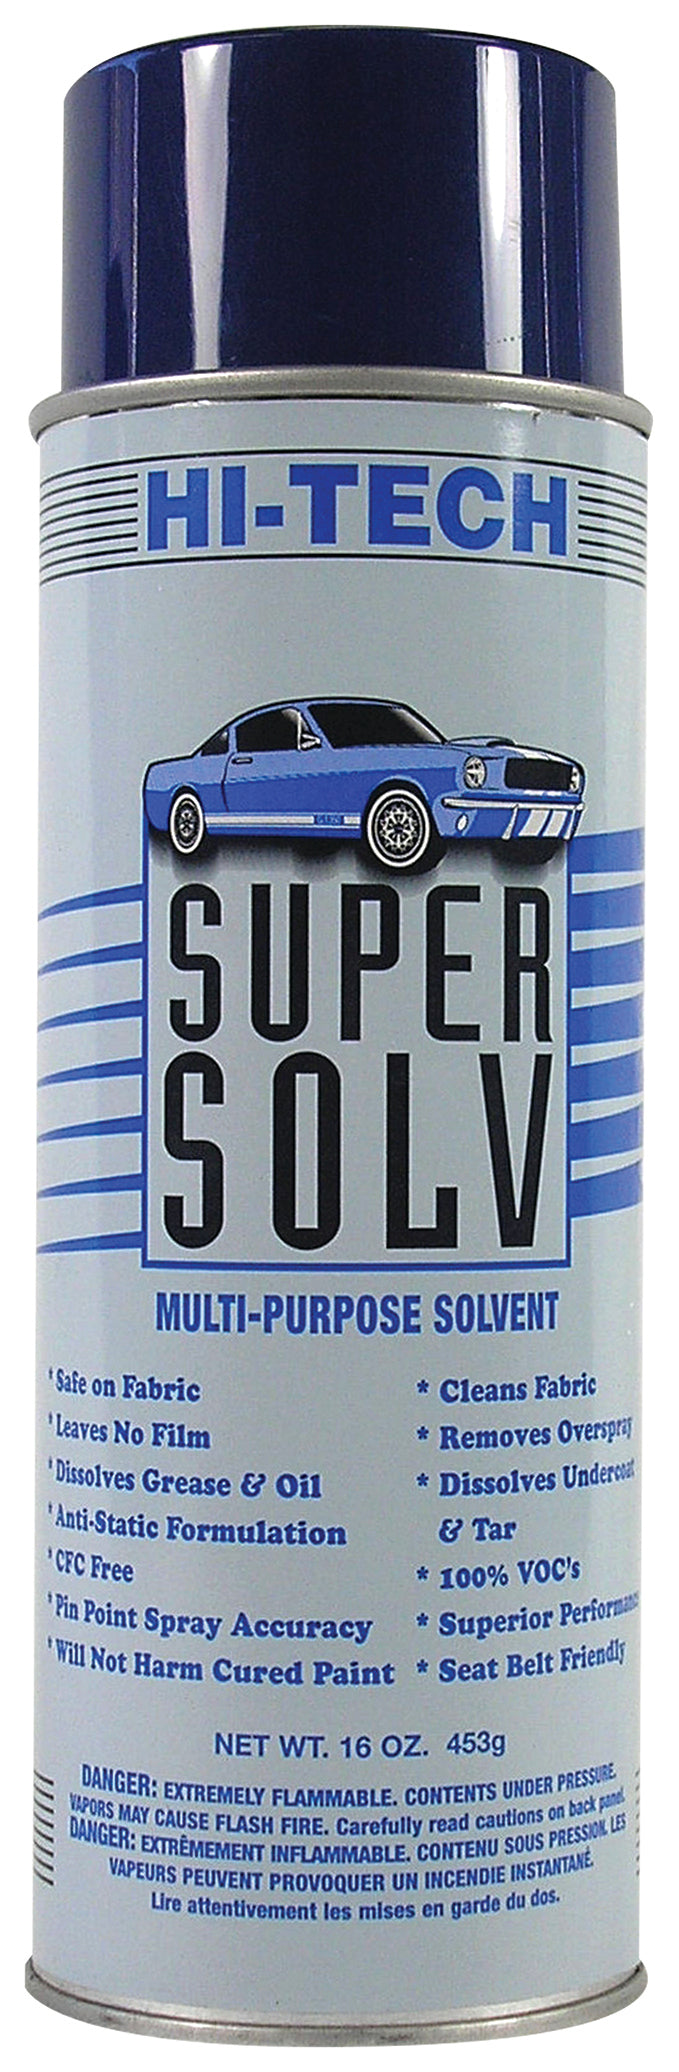 Super Solv Multi Purpose Solvent